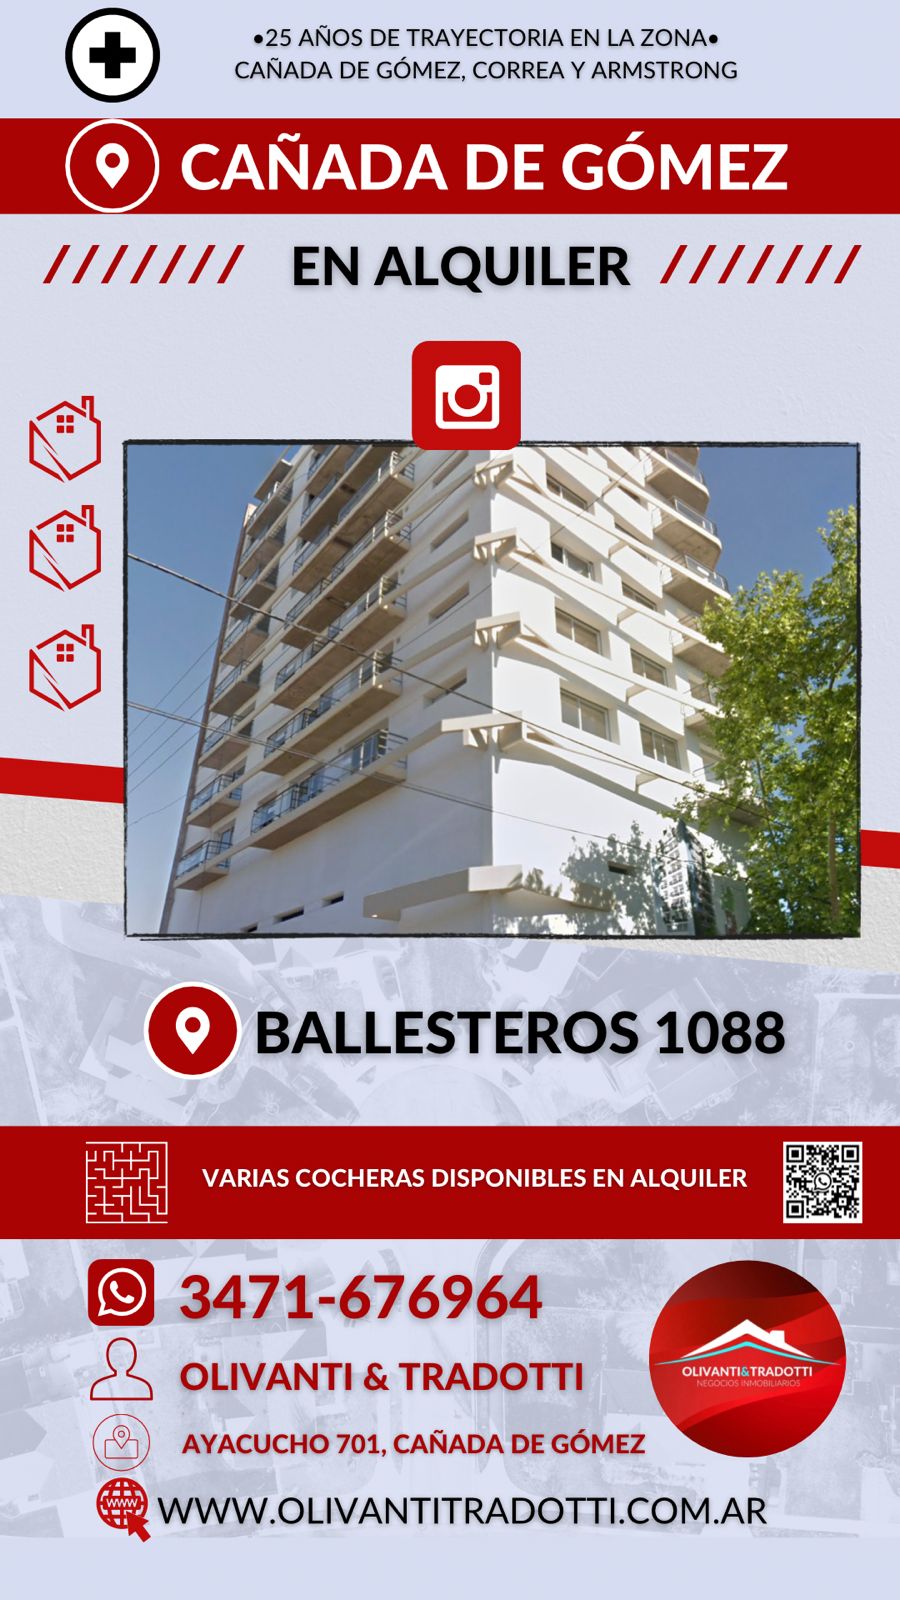 BALLESTEROS 1088 (COCHERAS)